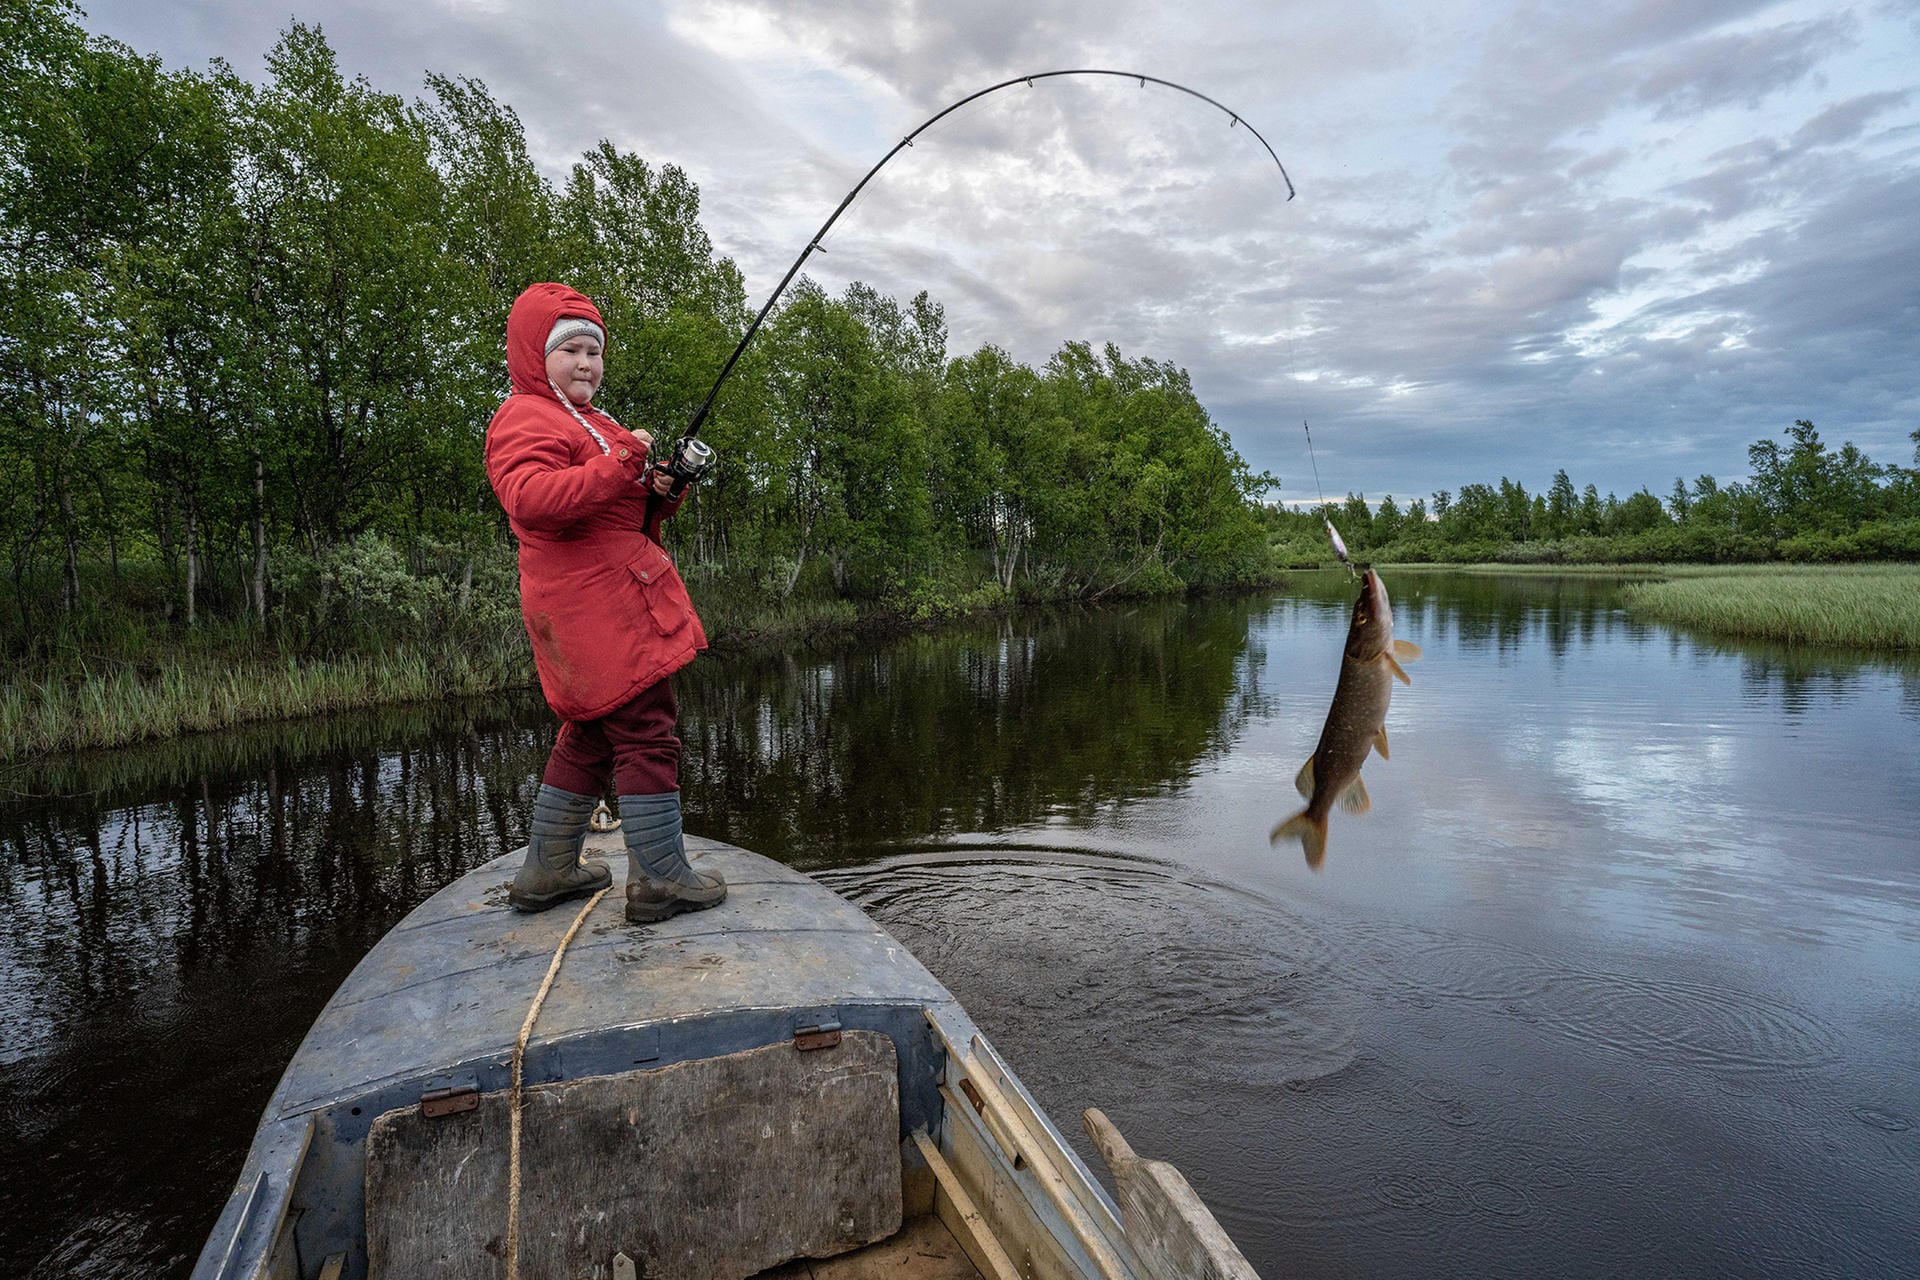 Natalya Saprunova aus Russland zeigt die elfjährige Uliana. Sie gehört zur Volksgruppe der Samen, einer der vielen ethnischen Minderheiten in Sibirien. Ihre Vorfahren waren Nomaden, doch Uliana führt ein Leben zwischen der traditionellen und der modernen Welt.